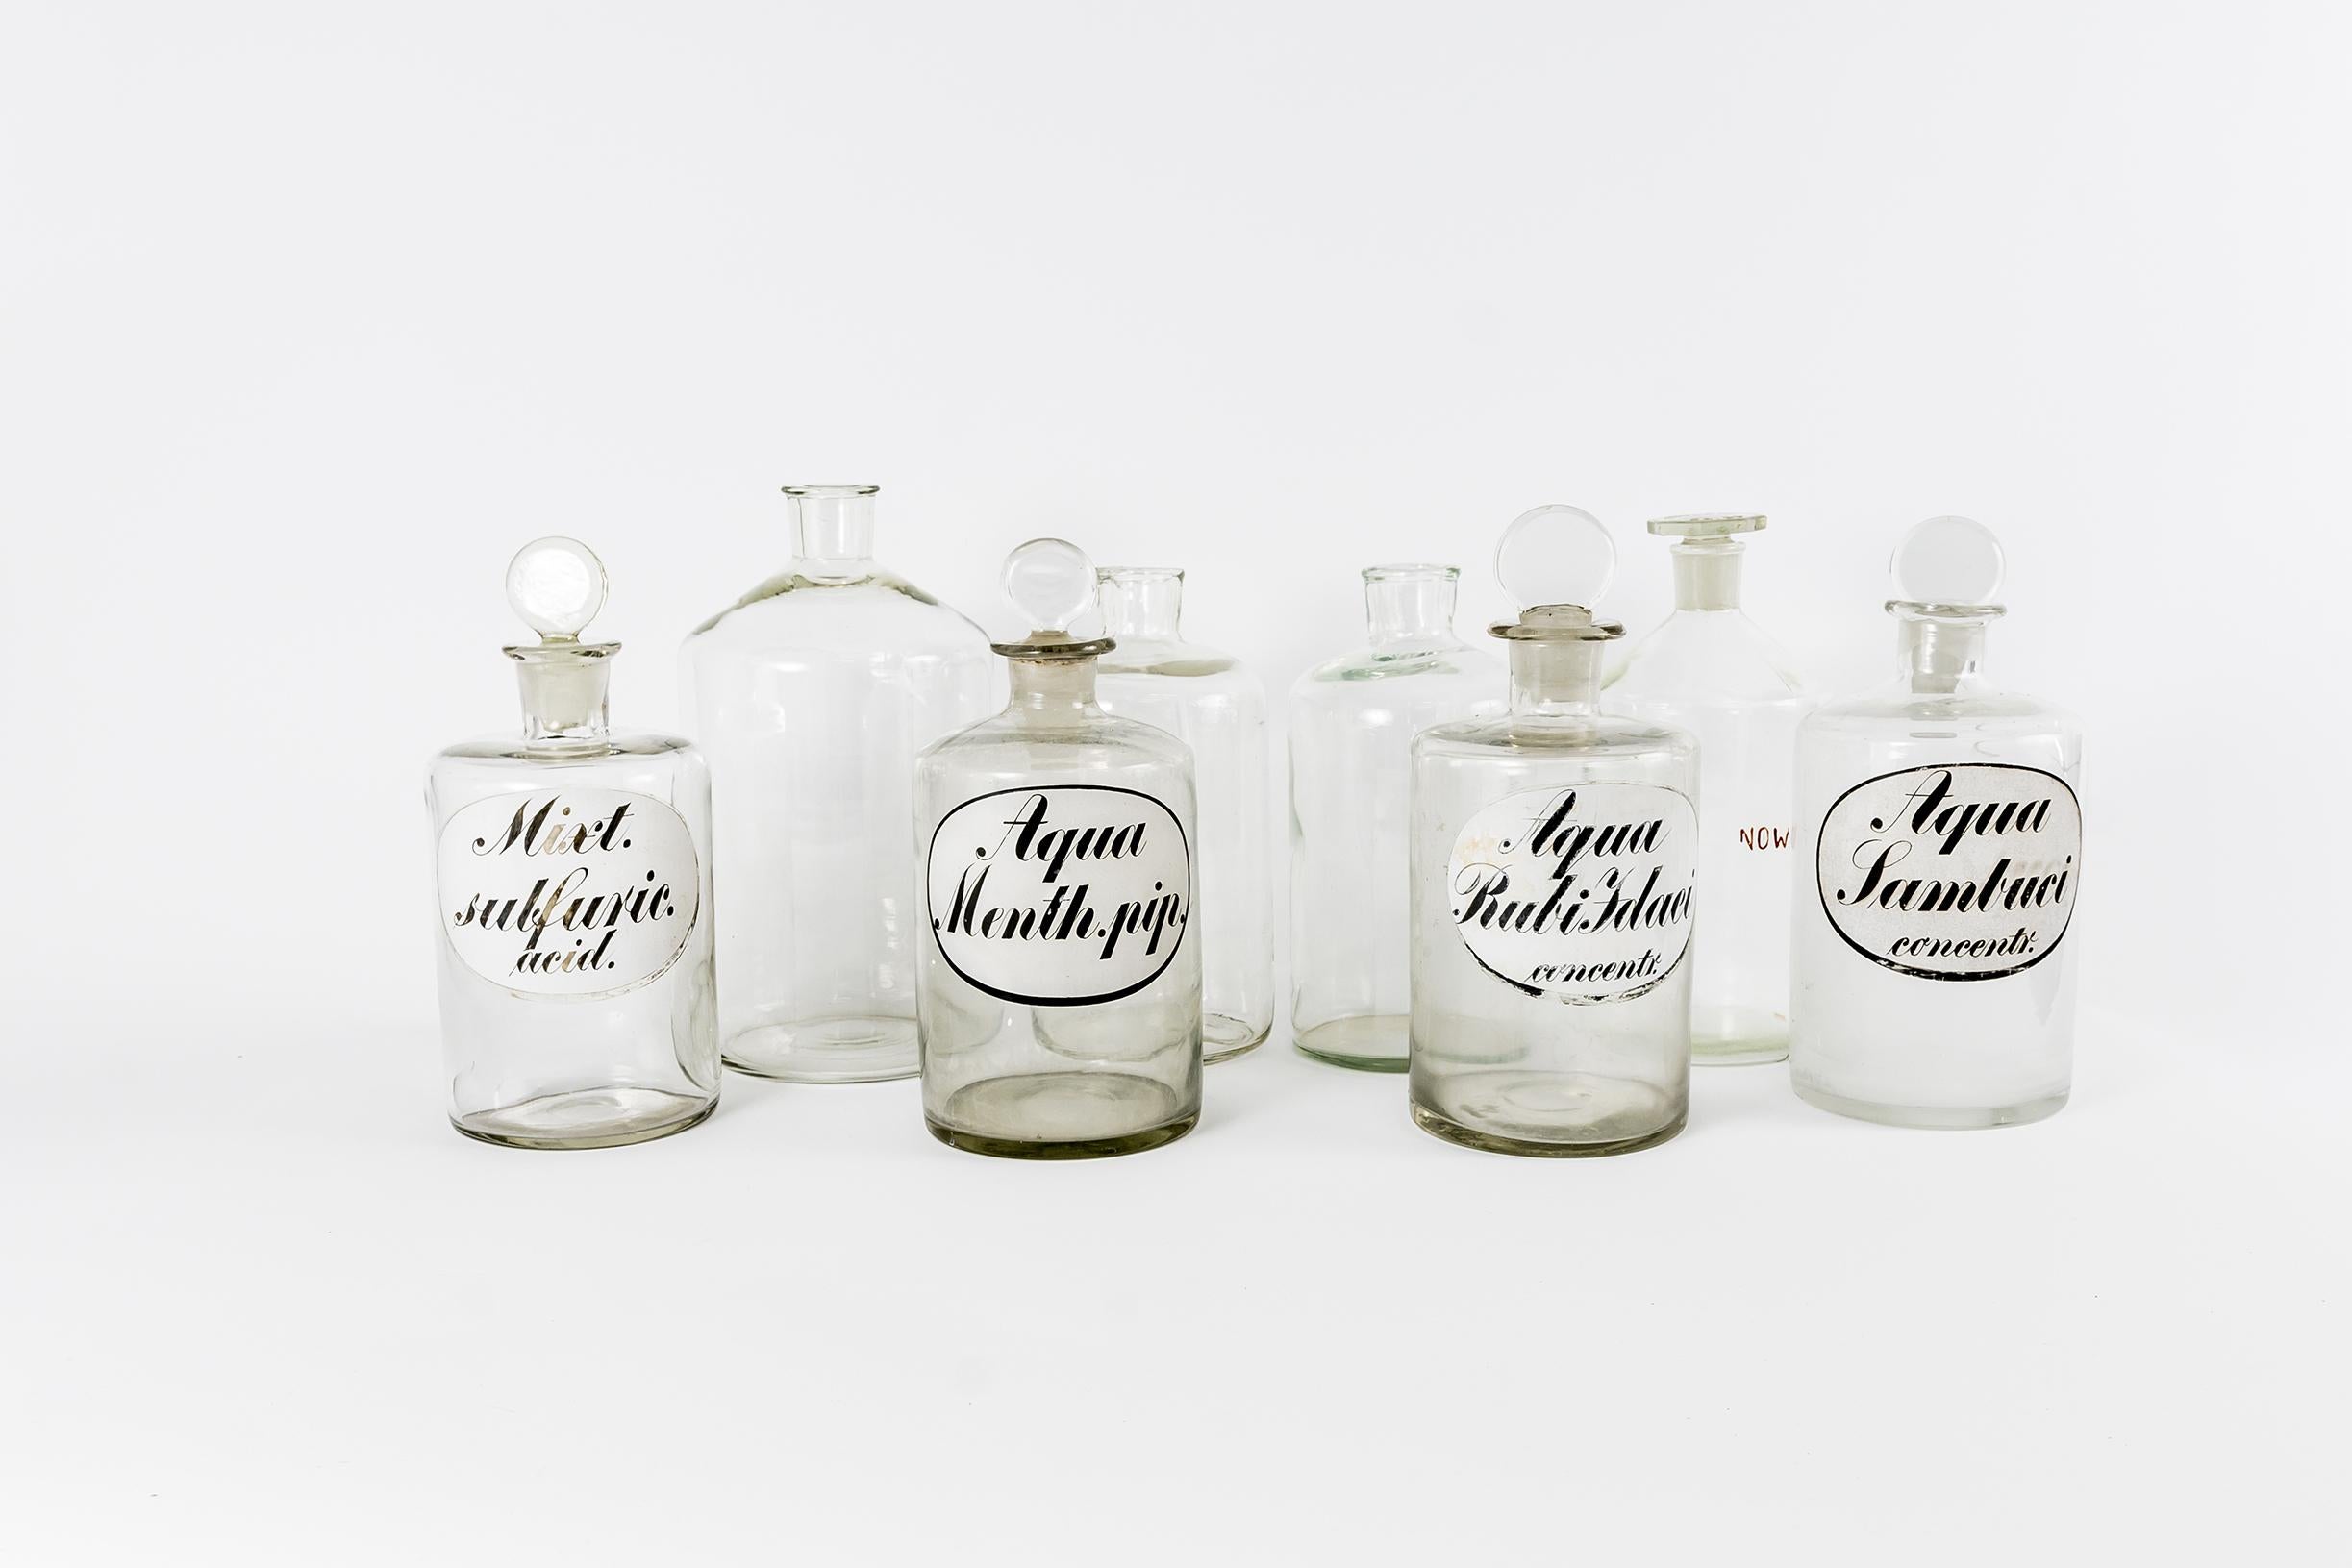 Mid-Century Modern Set Of 11 Glass Pharmacy Bottles, 1920s, Germany For Sale